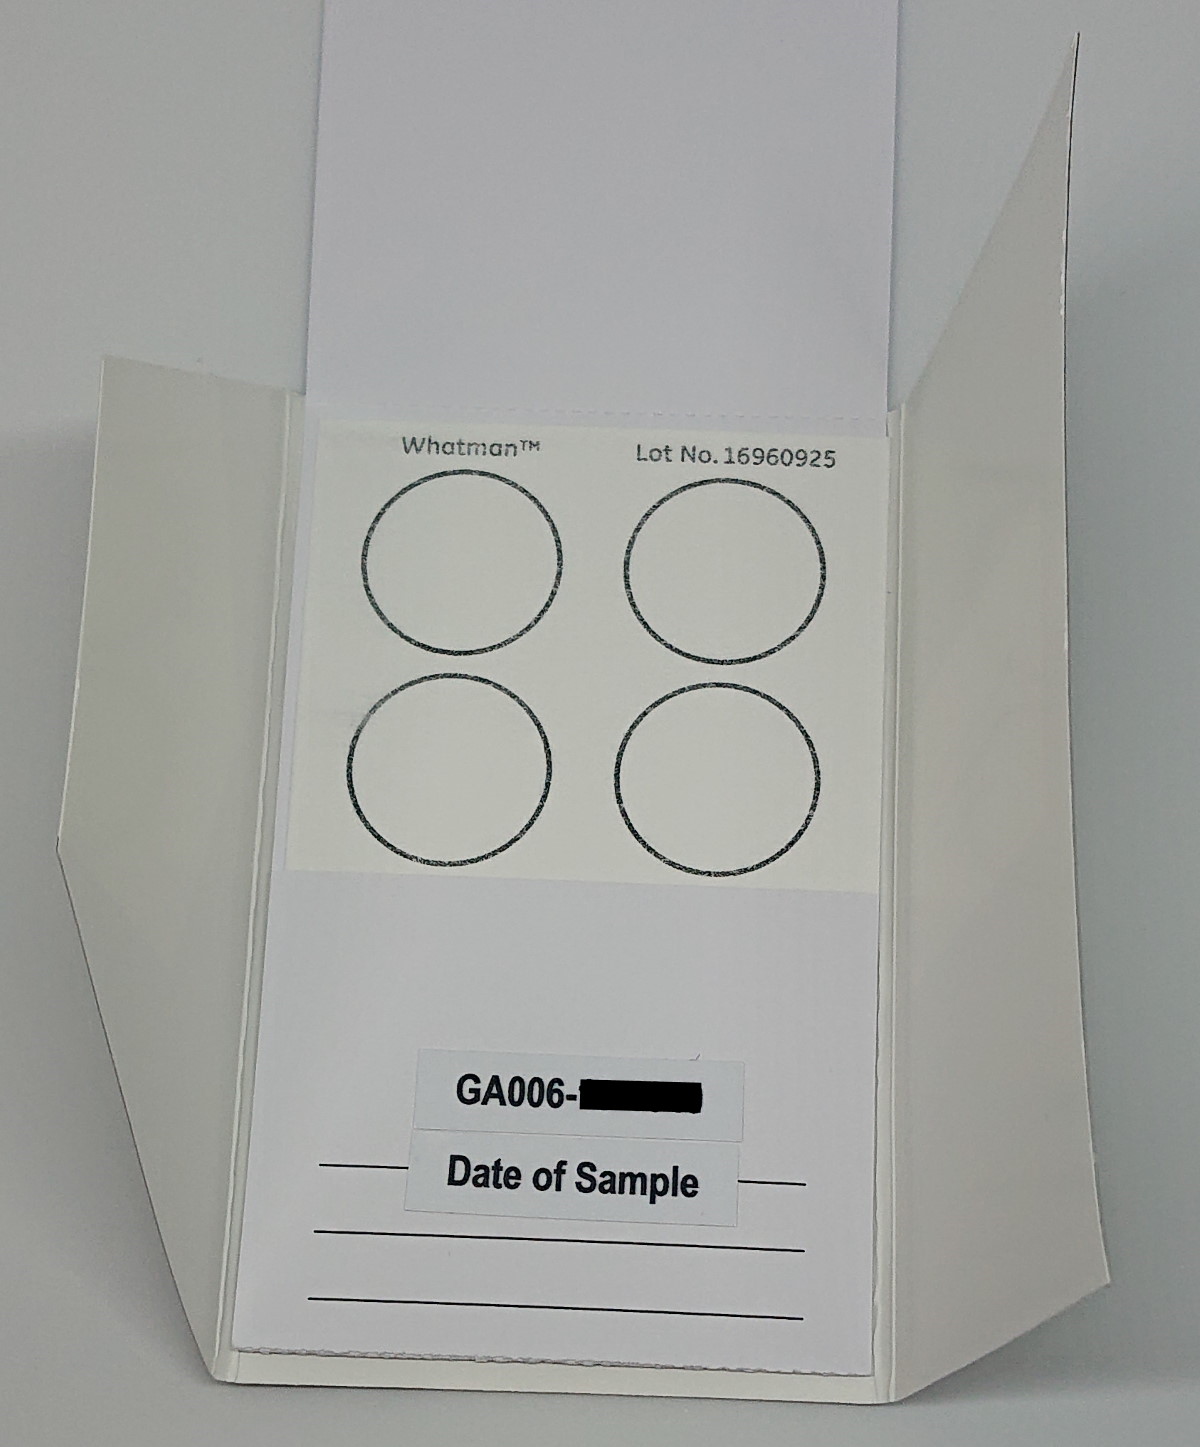 GlycanAge test sample sheet